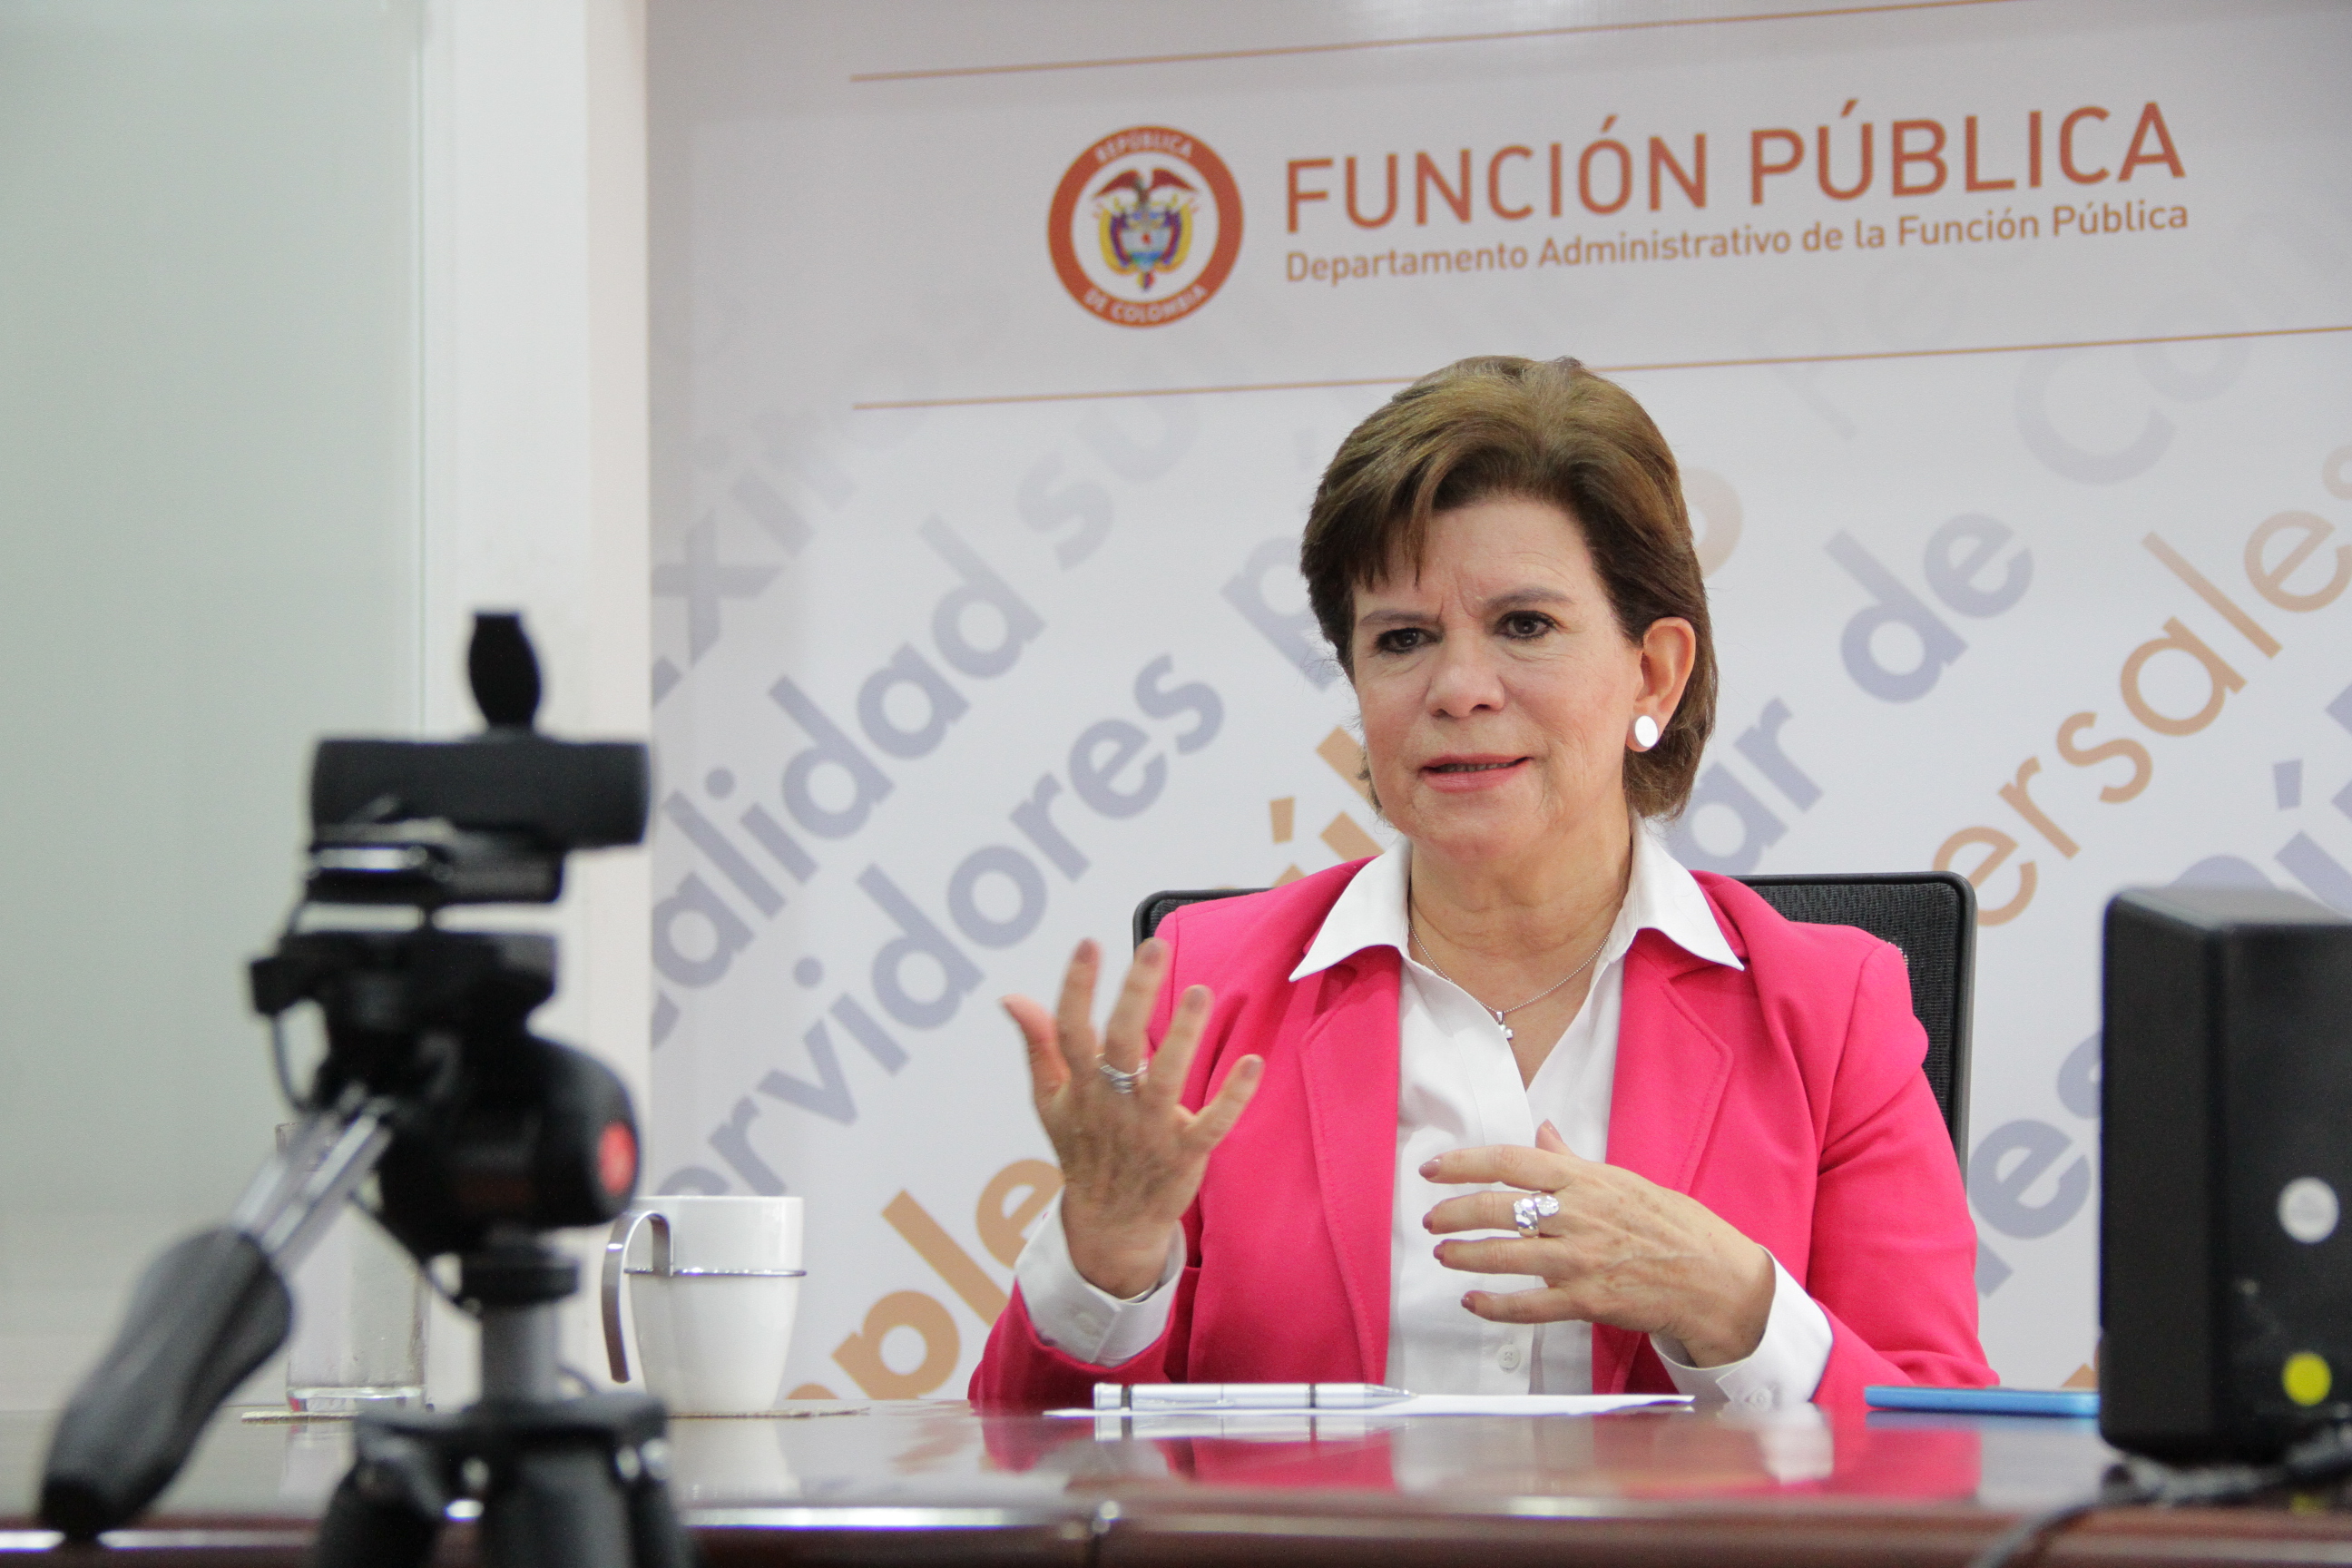 Directora de Función Pública, Liliana Caballero, en su intervención en el Webinar del Clad